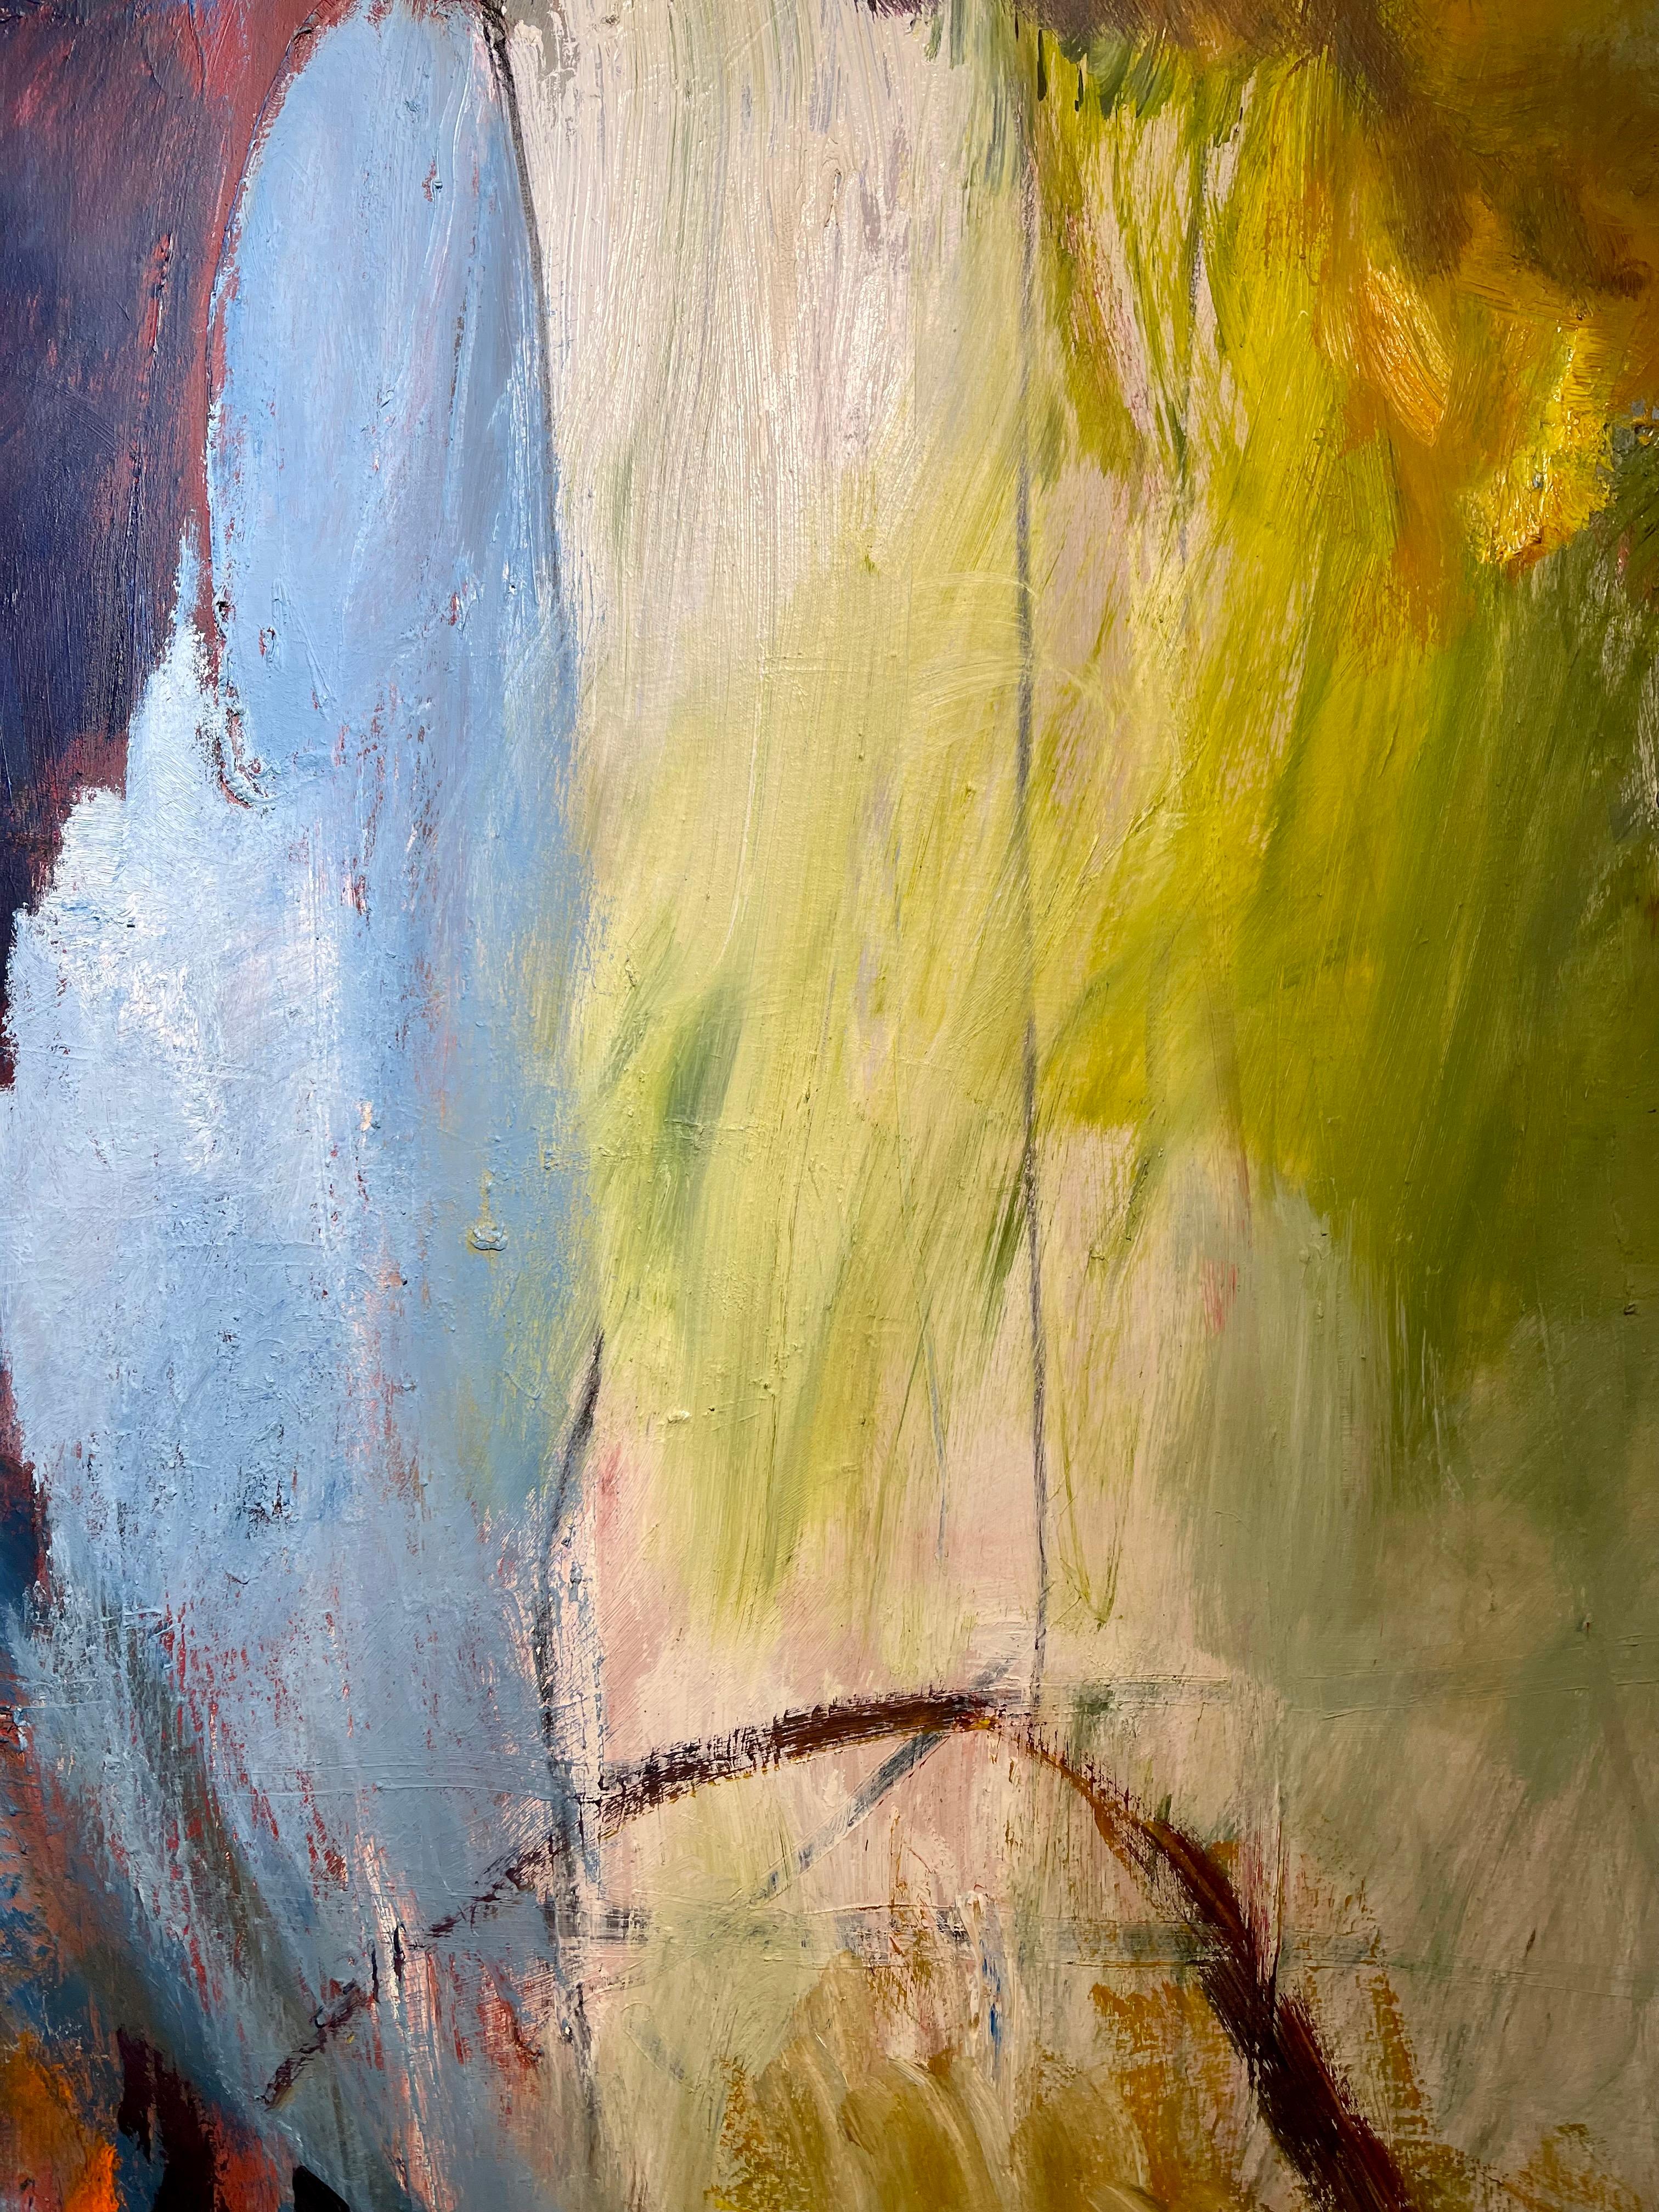 Mujeres en el Expresionismo Abstracto: Coloridas obras inspiradas en la puesta de sol de la artista tejana Winter Rusiloski.
Detalles: 
Winter Rusiloski
Catedral, 2016
Óleo sobre lienzo
48 x 45